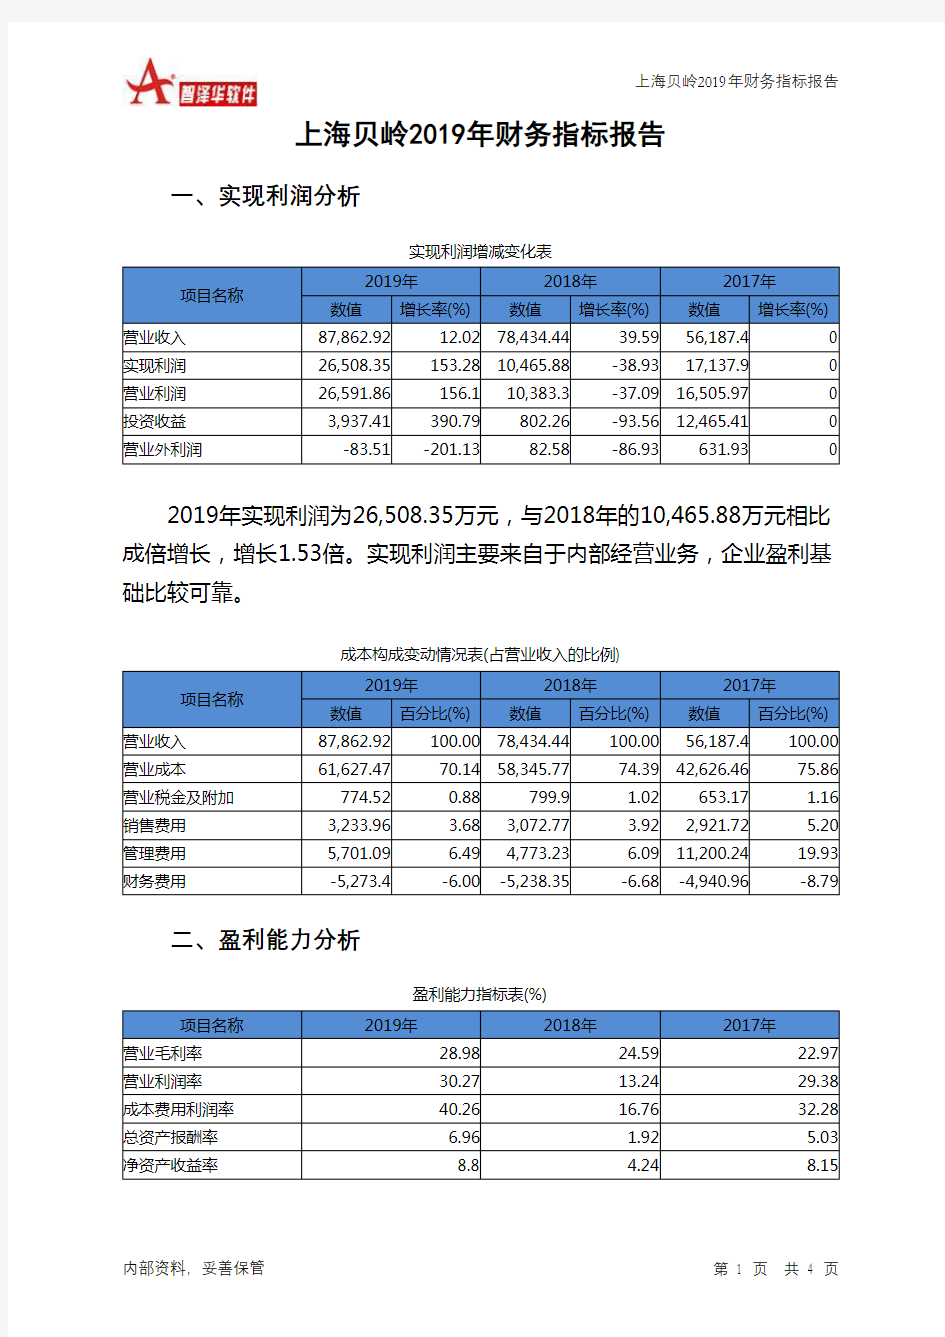 上海贝岭2019年财务指标报告